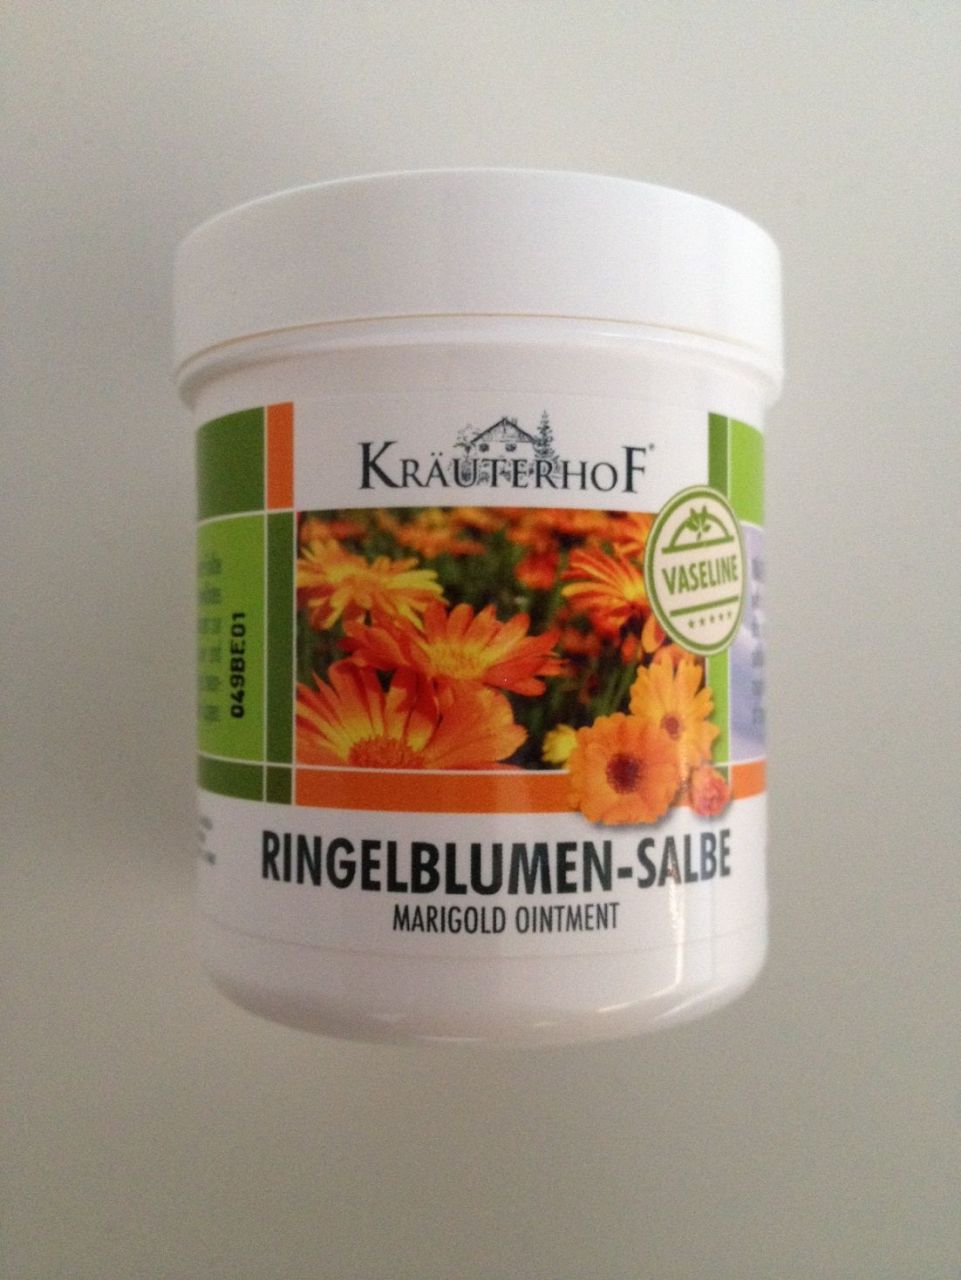 Kräuterhof Ringelblumensalbe 250 ml GLO766350356